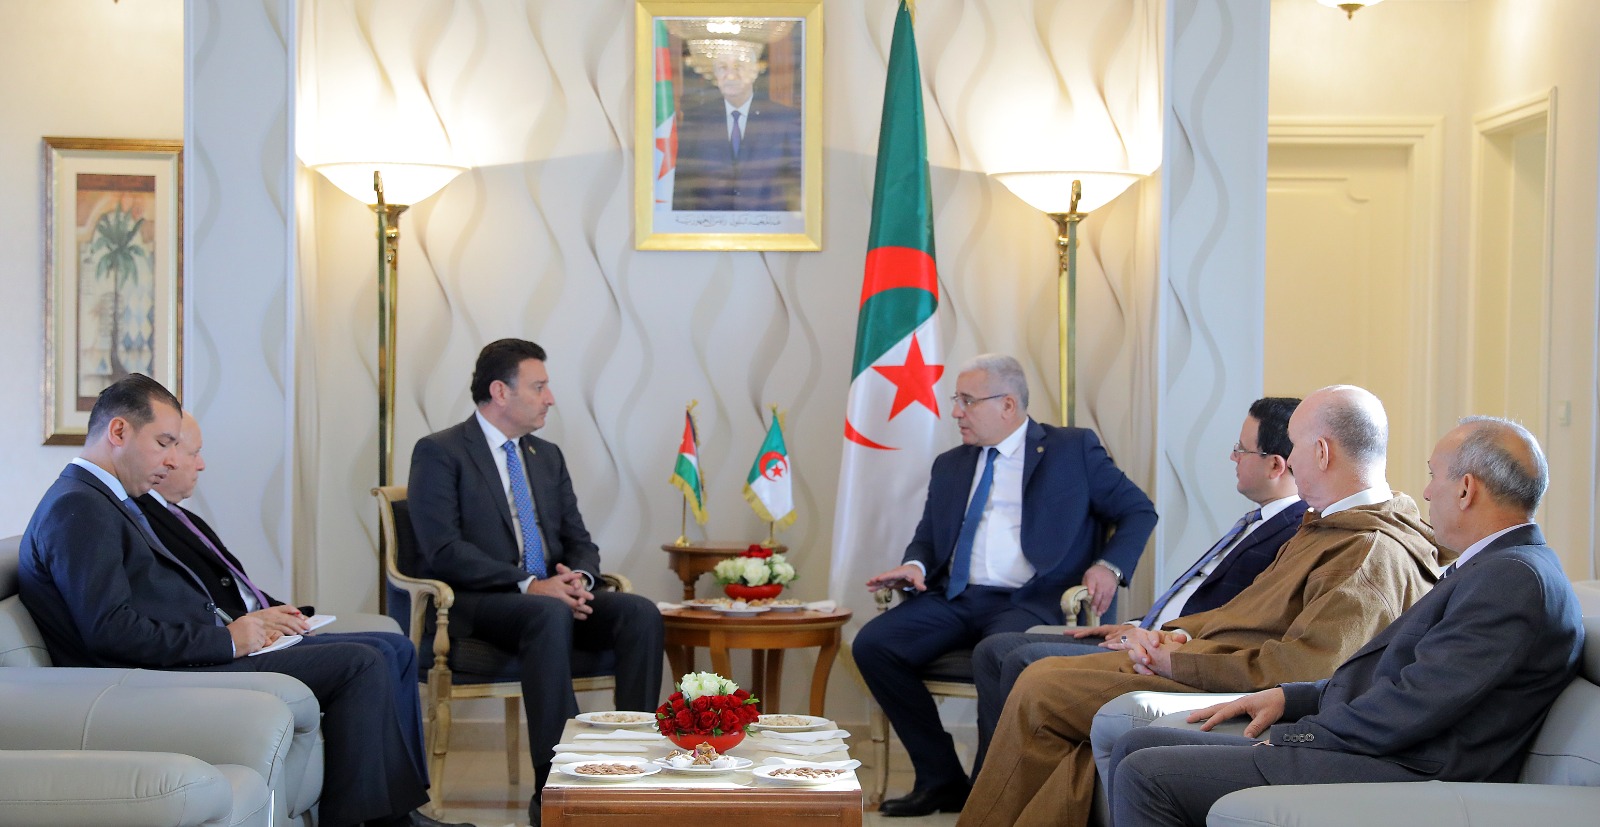  بوغالي يؤكد لرئيس مجلس النواب الصفدي دعم الجزائر للوصاية الهاشمية على المقدسات...صور